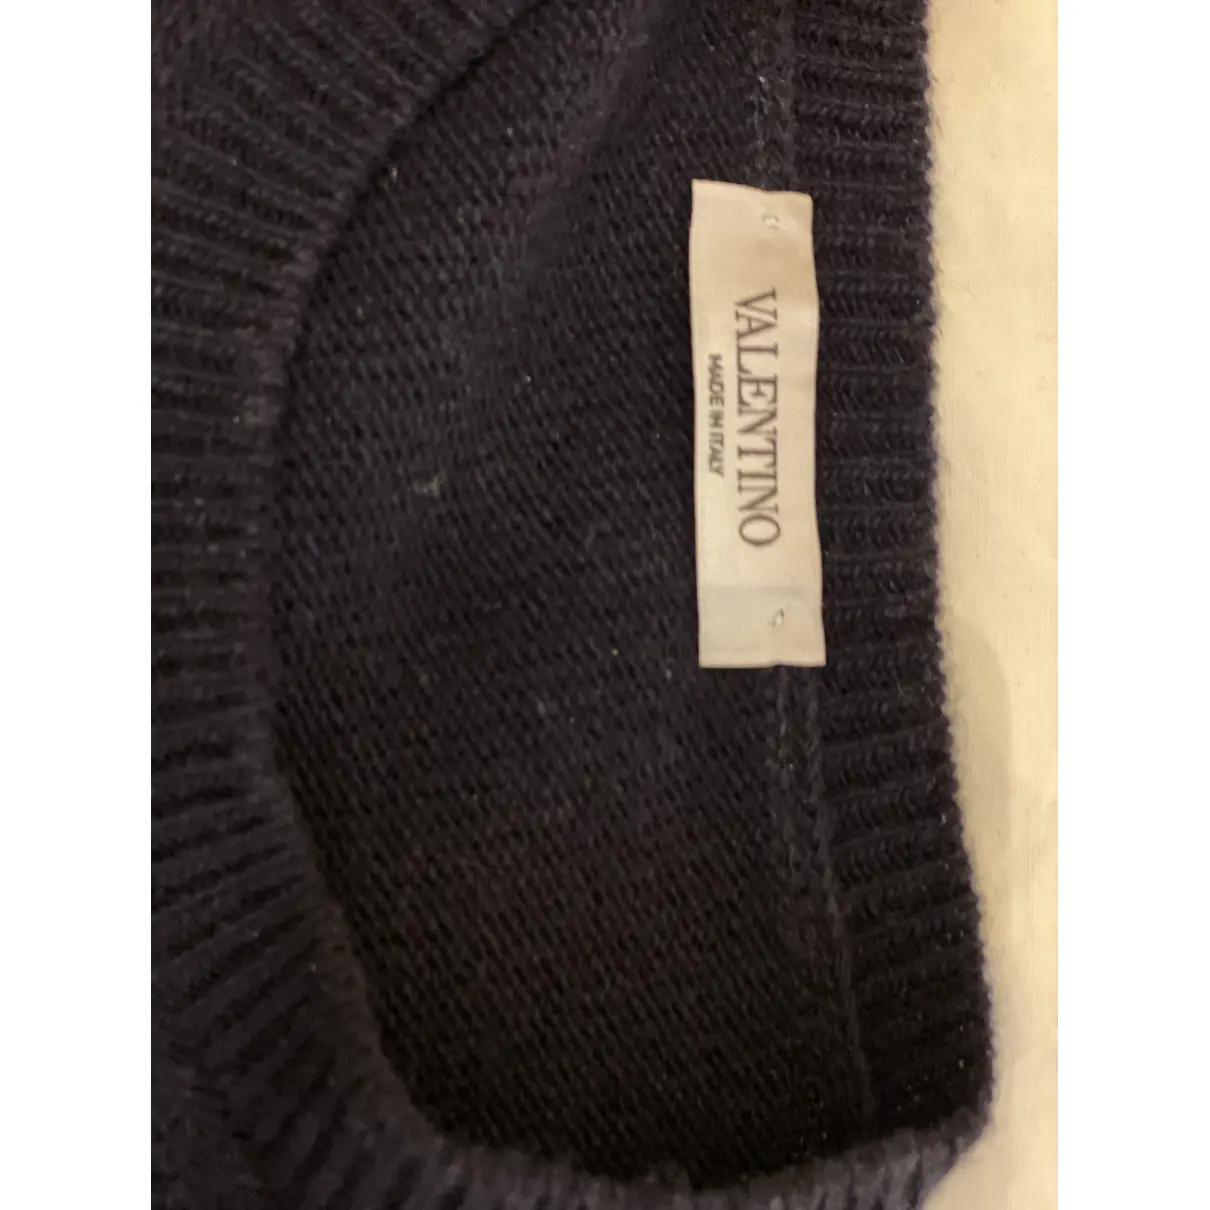 Buy Valentino Garavani Cashmere knitwear & sweatshirt online